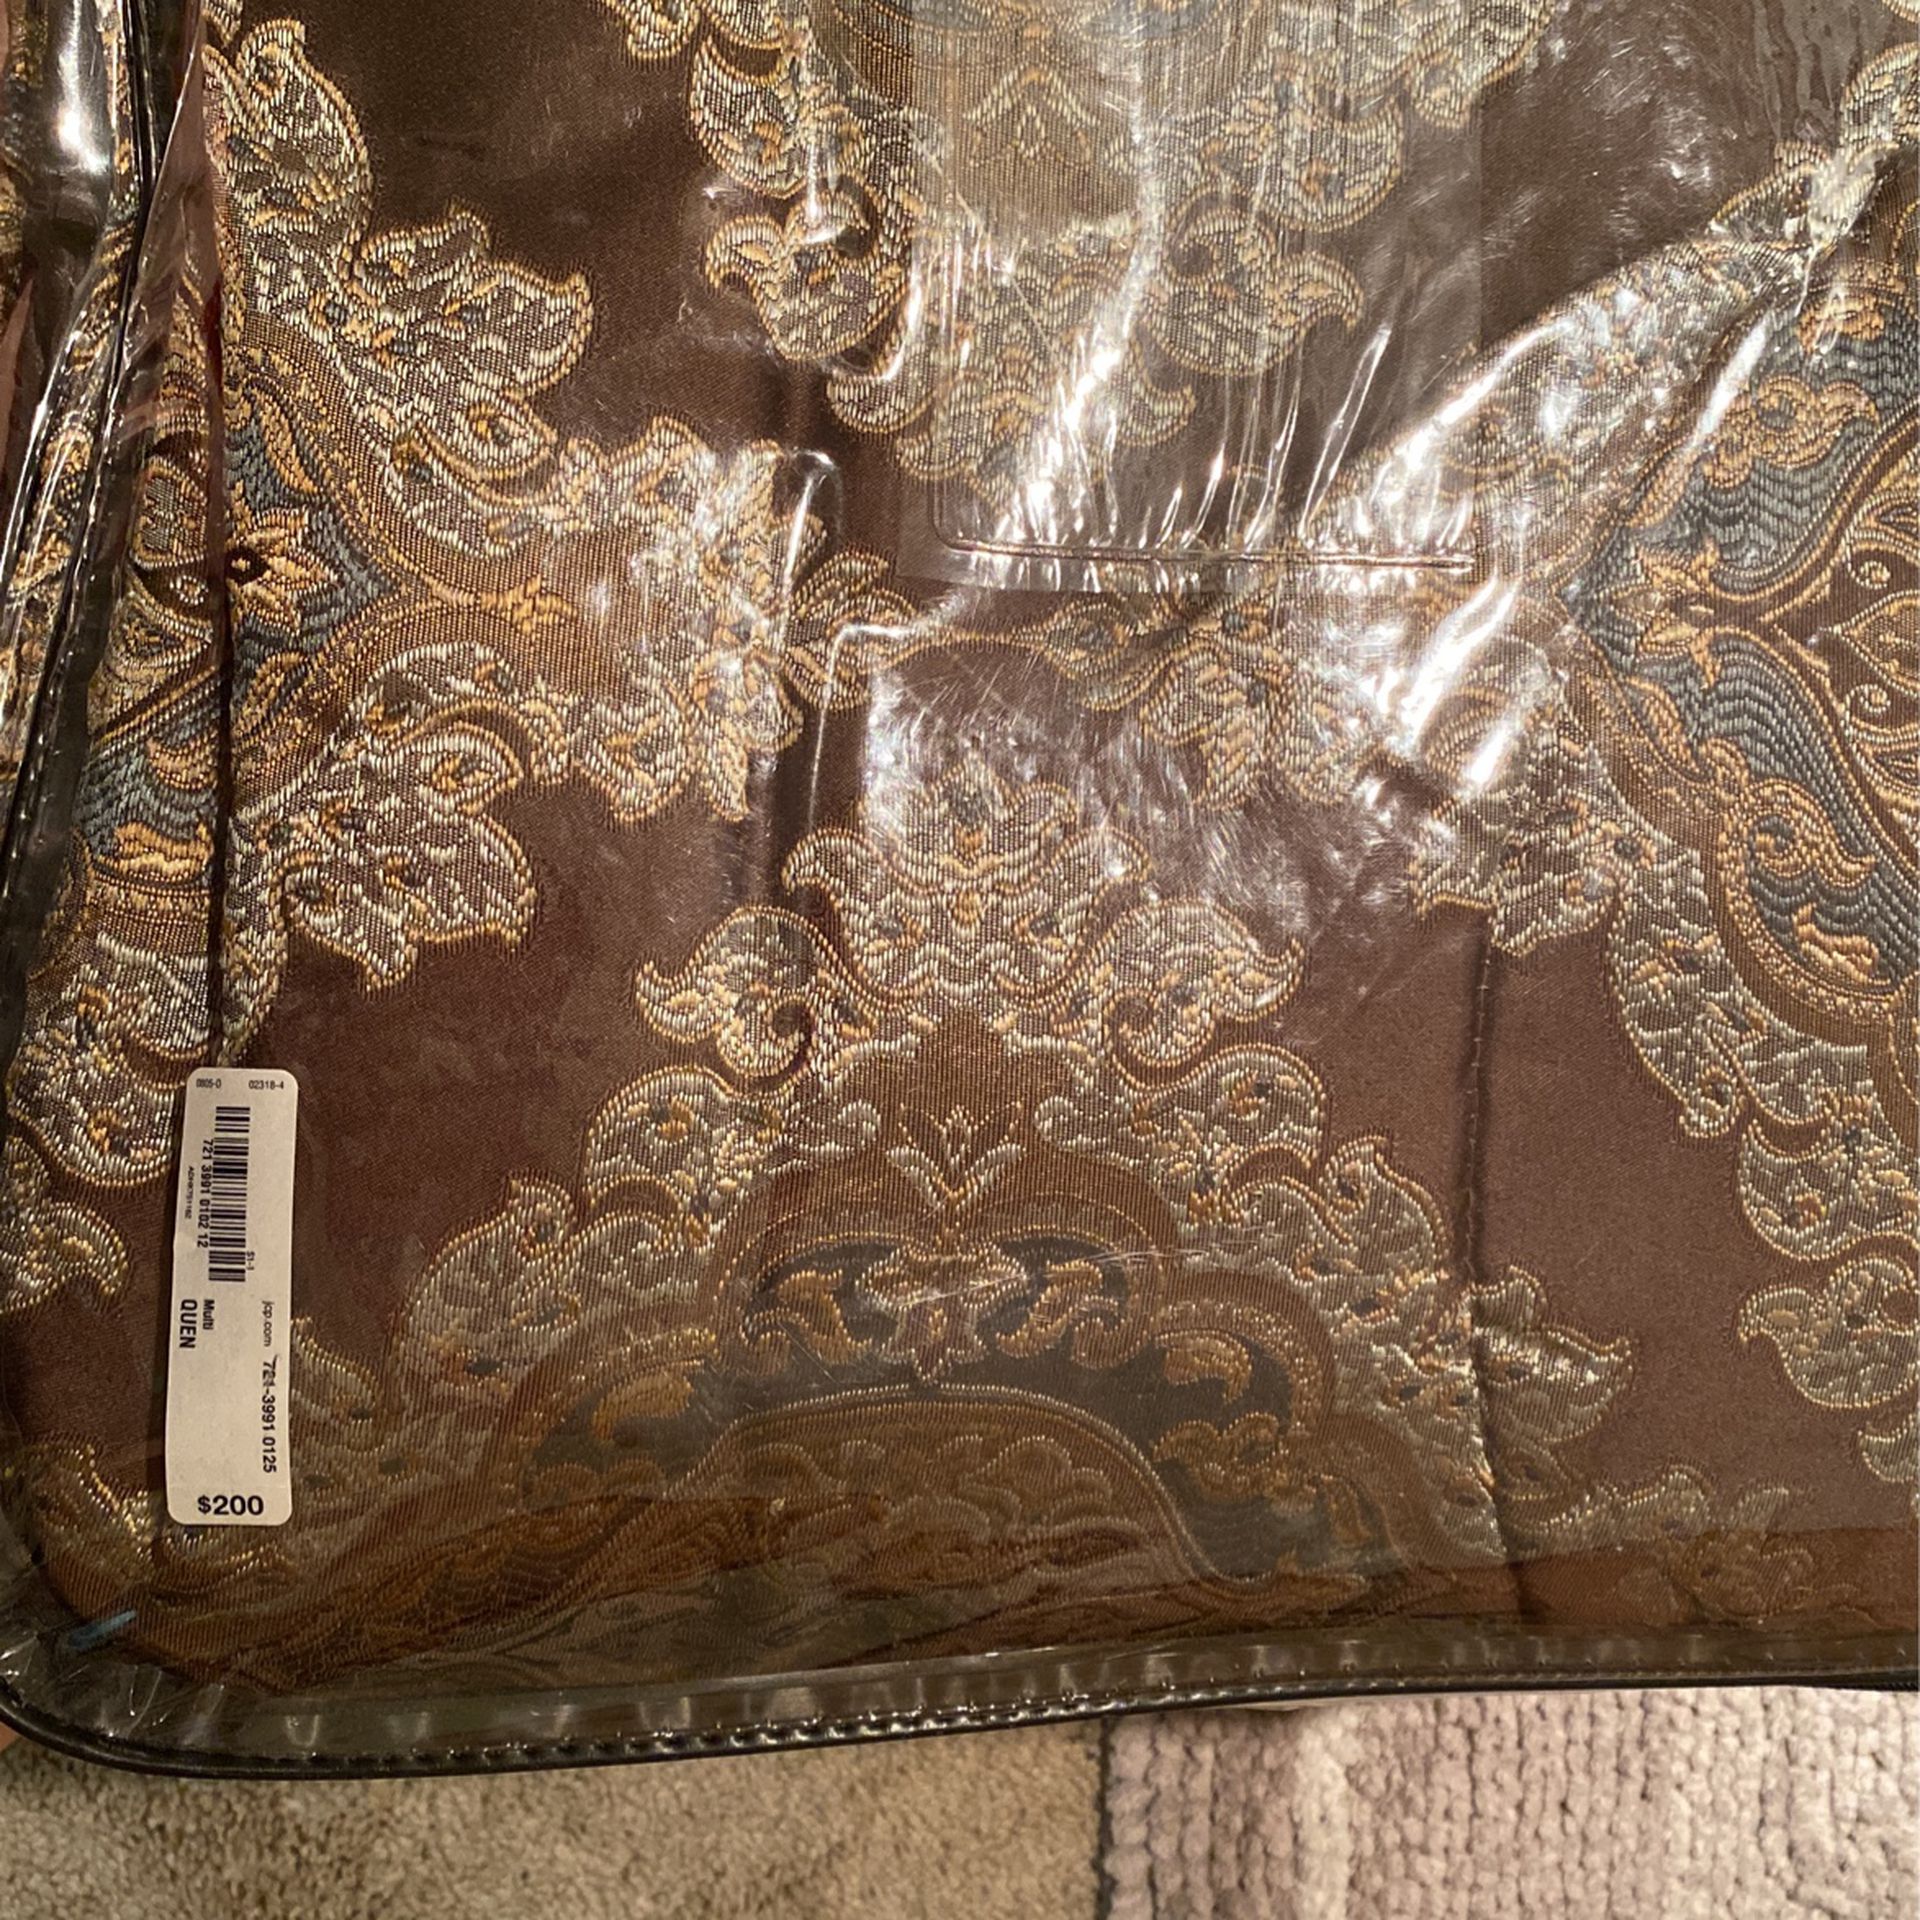 Queen Bed In A Bag 